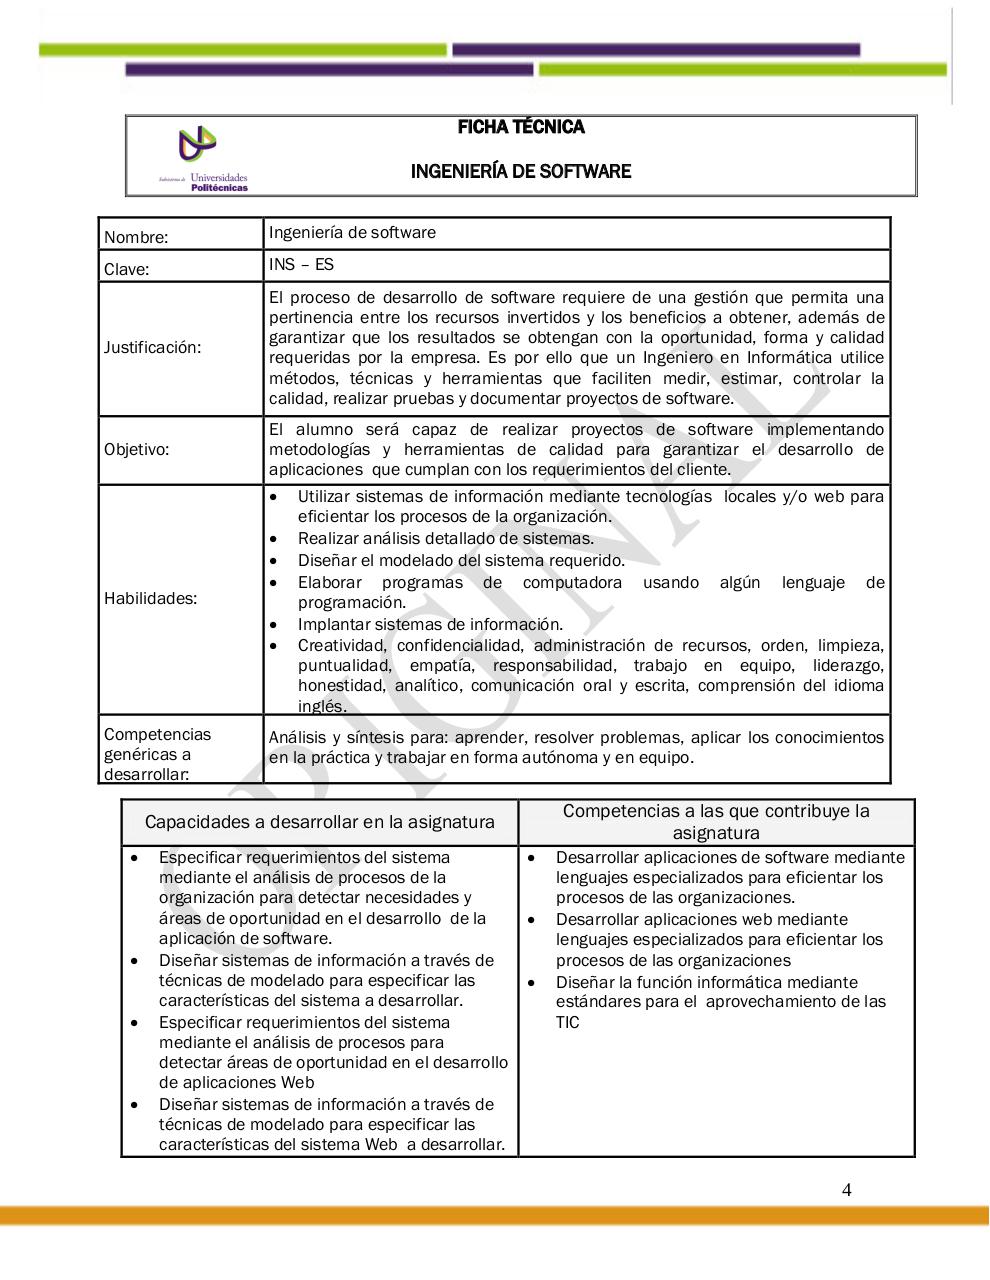 Vista previa del archivo PDF ma-10054-ingenieria-de-software4-1.pdf